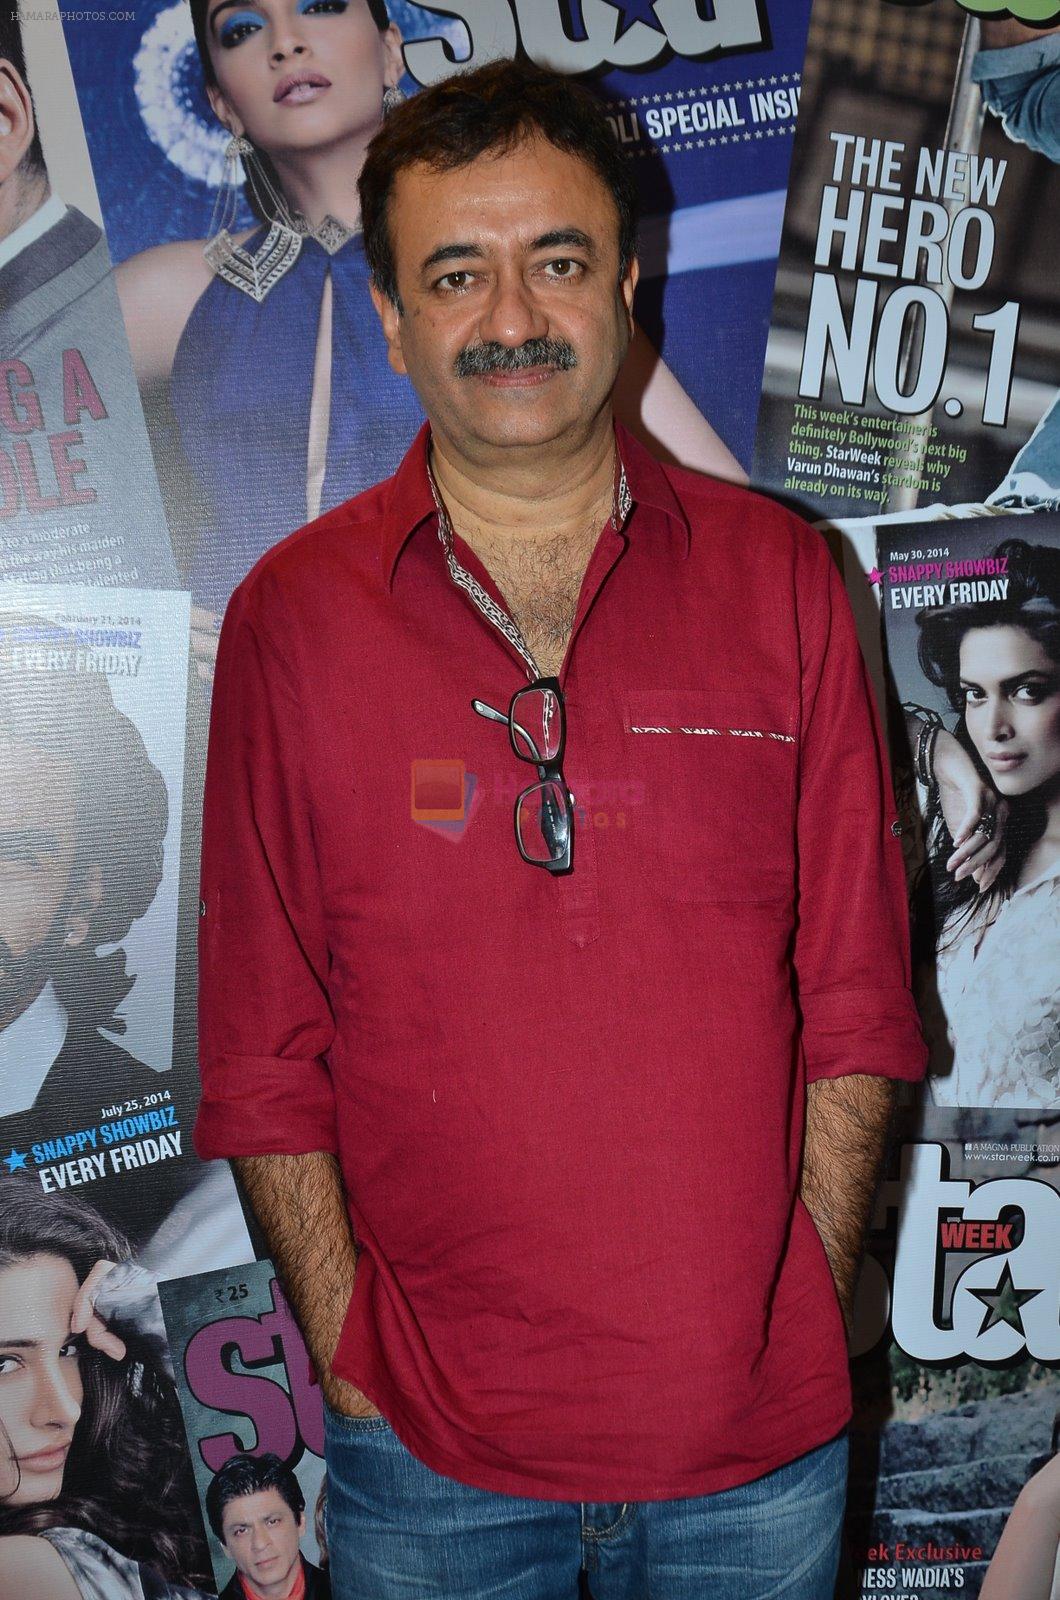 Rajkumar Hirani at Magna house in Mumbai on 12th Dec 2014